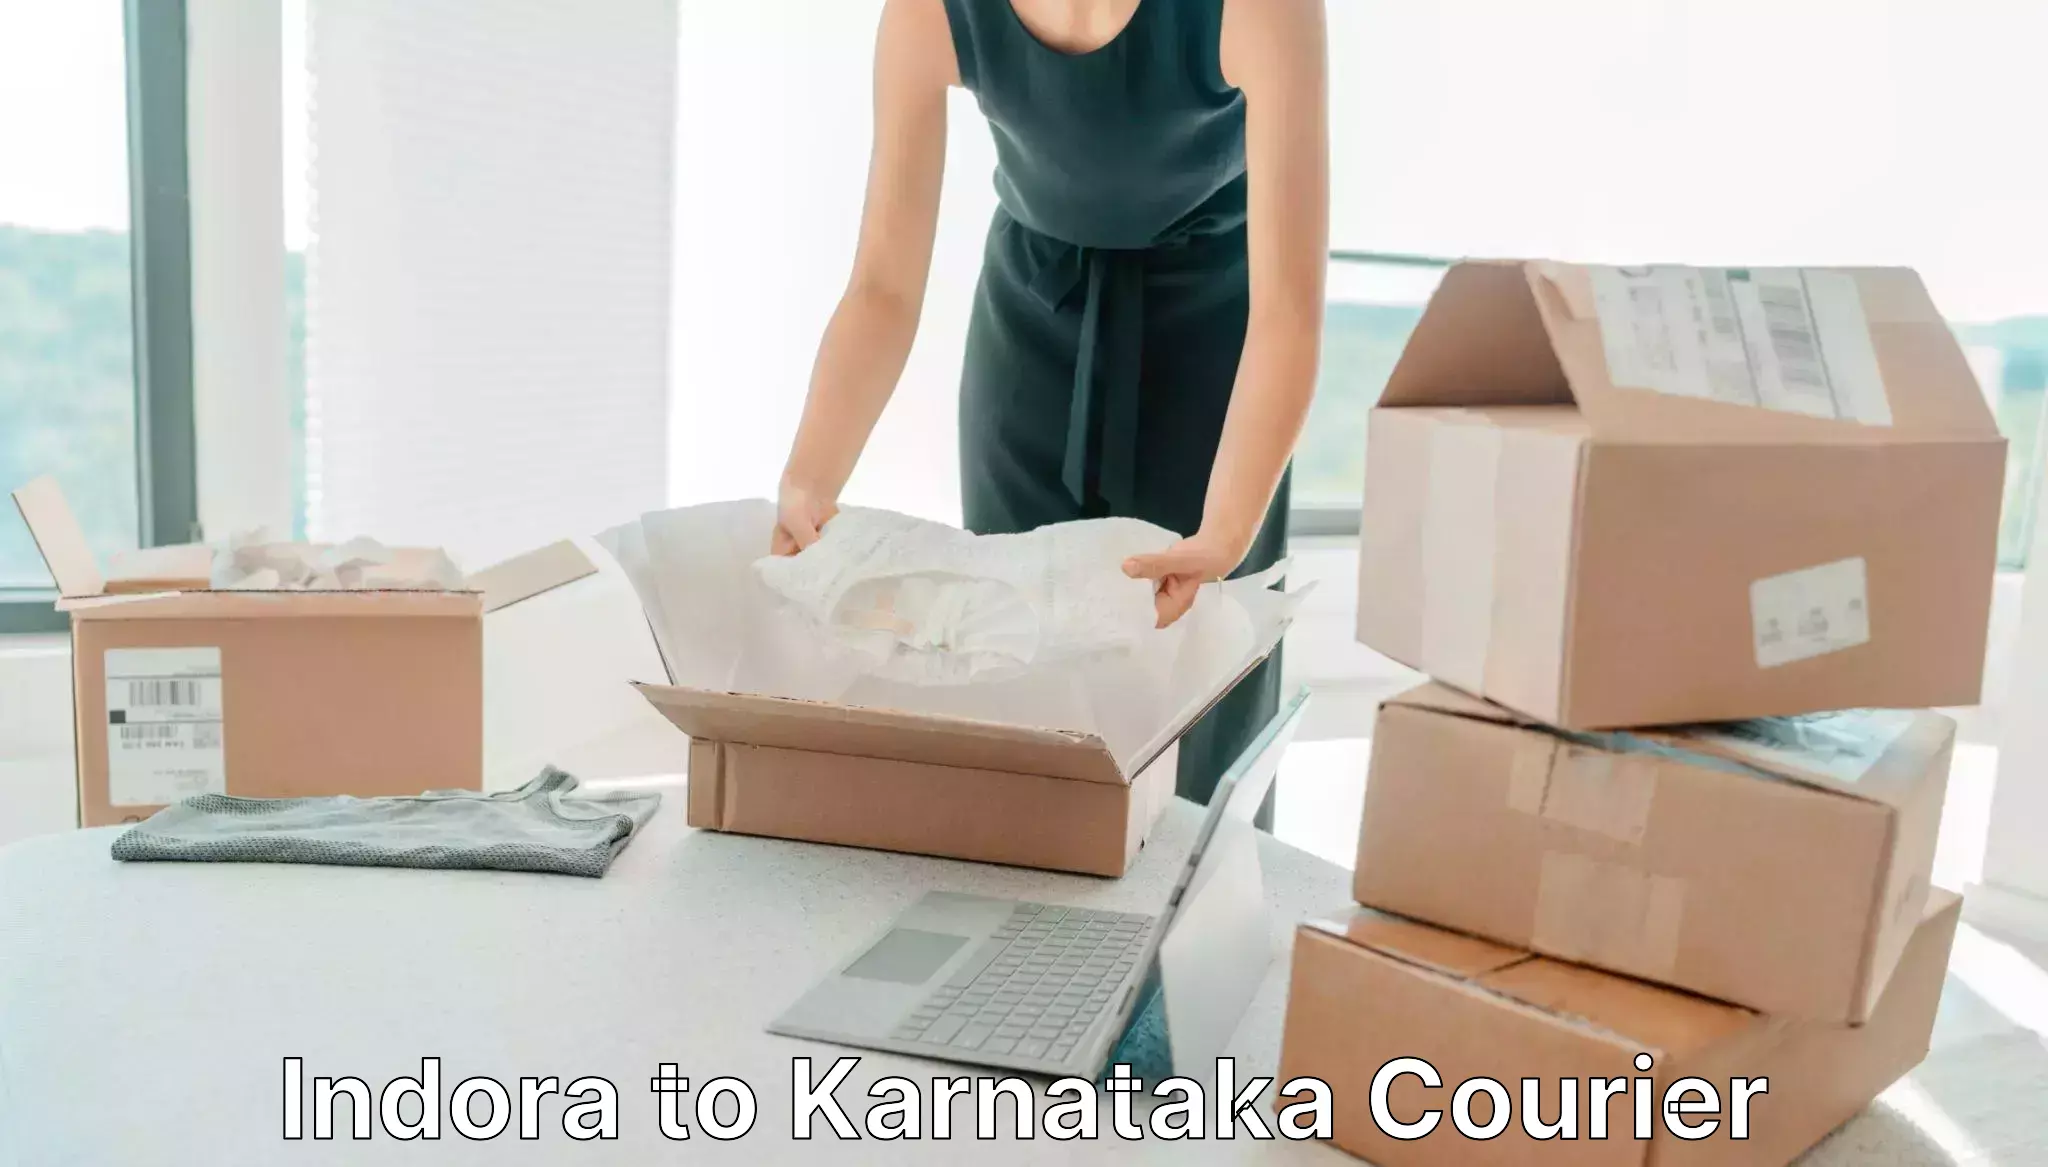 Premium courier services Indora to Karnataka